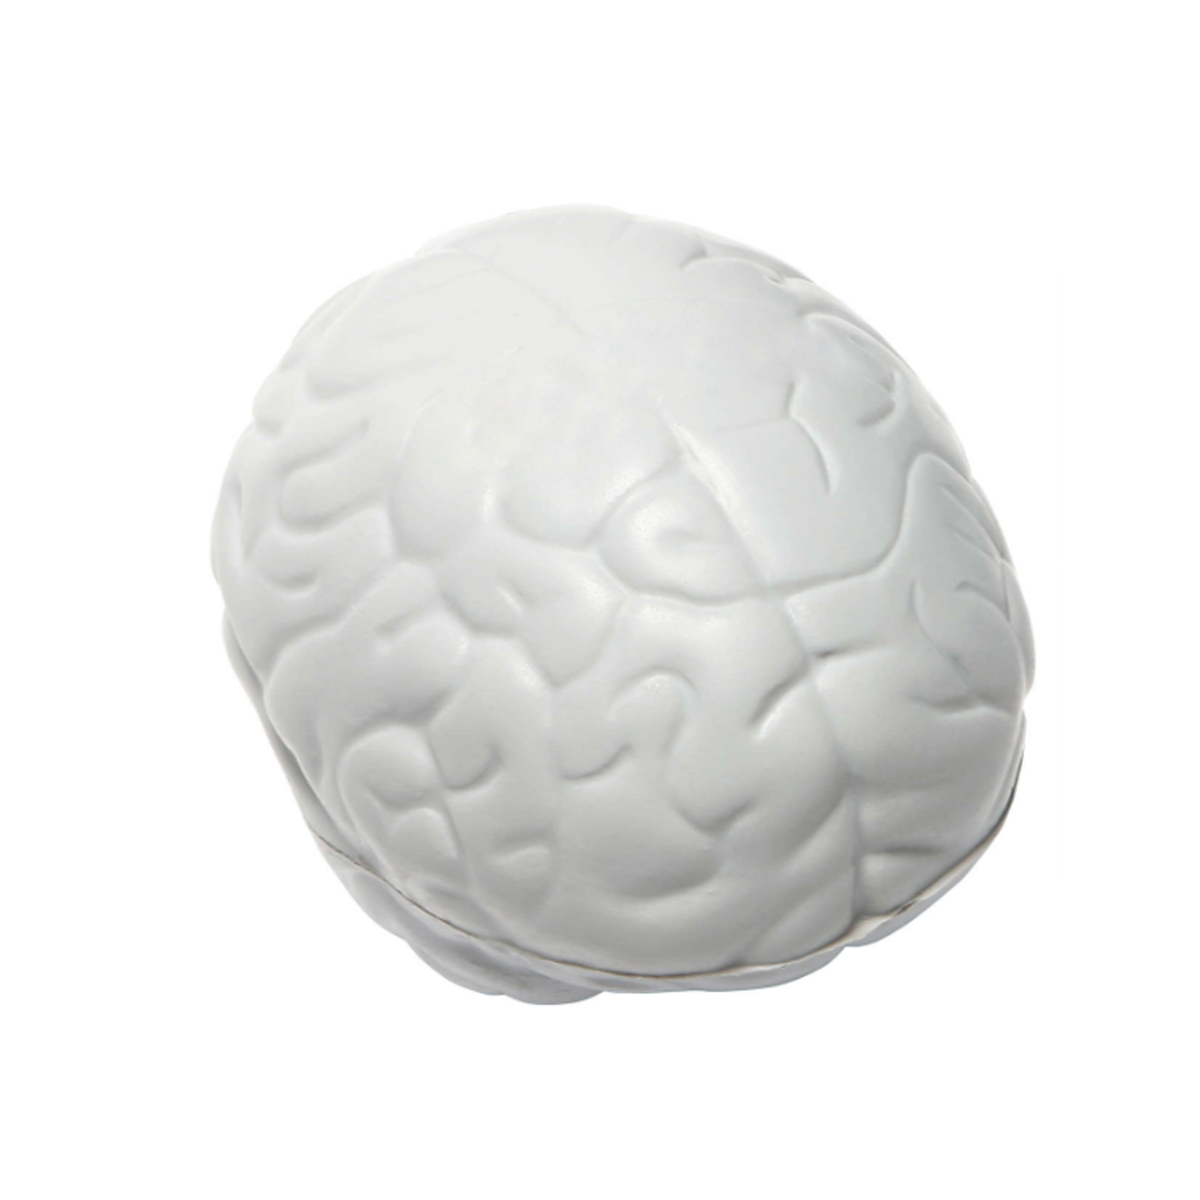 סמארט - PU גמיש בצורת מוח. 
מידות המוצר: 50x74x56 מ”מ.